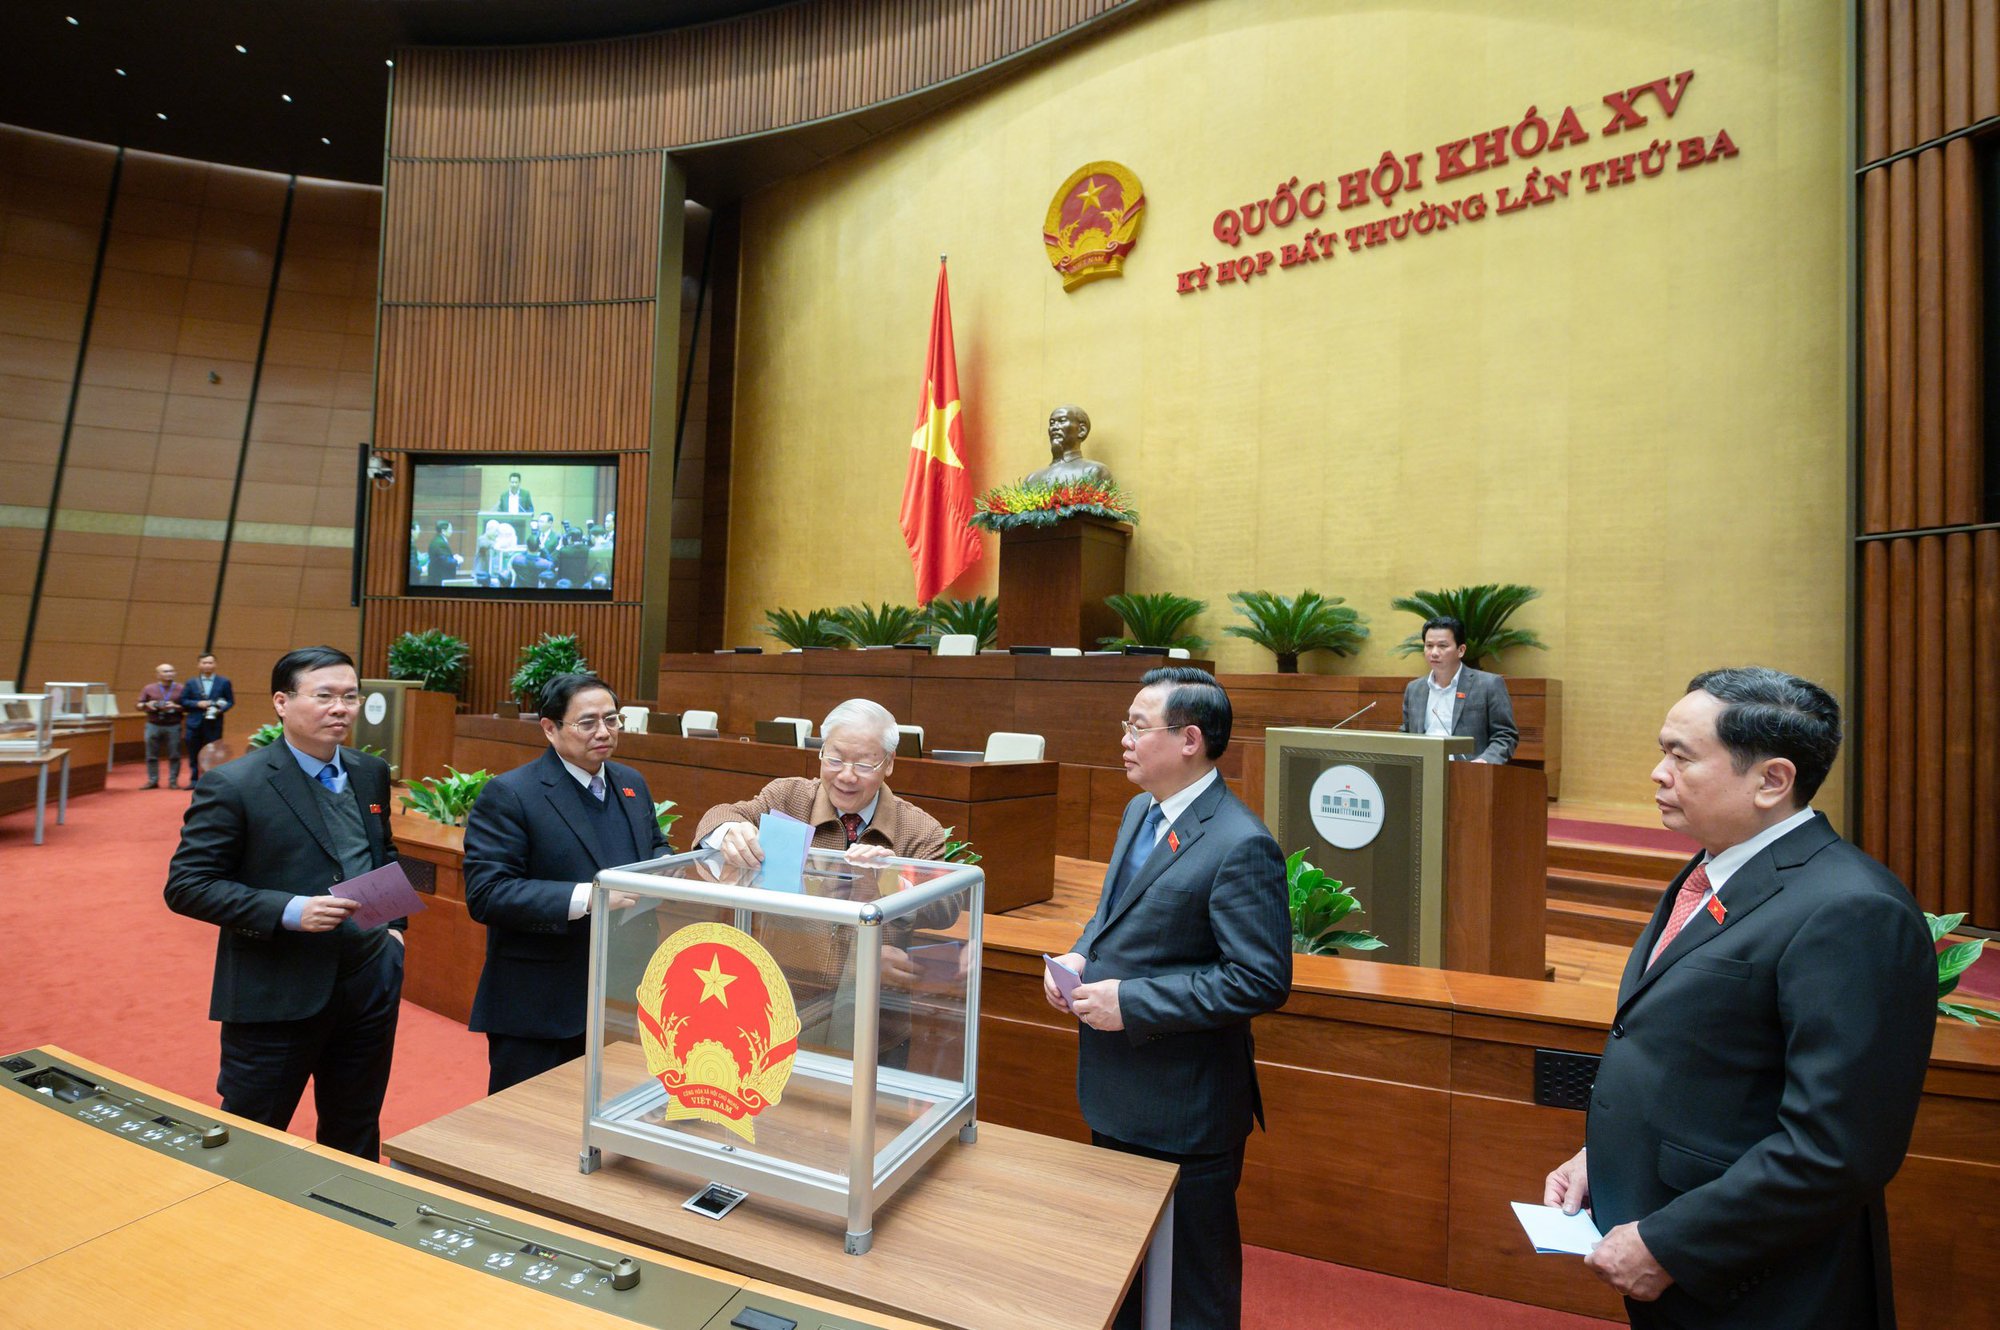 Quốc hội miễn nhiệm Chủ tịch nước Nguyễn Xuân Phúc - Ảnh 1.